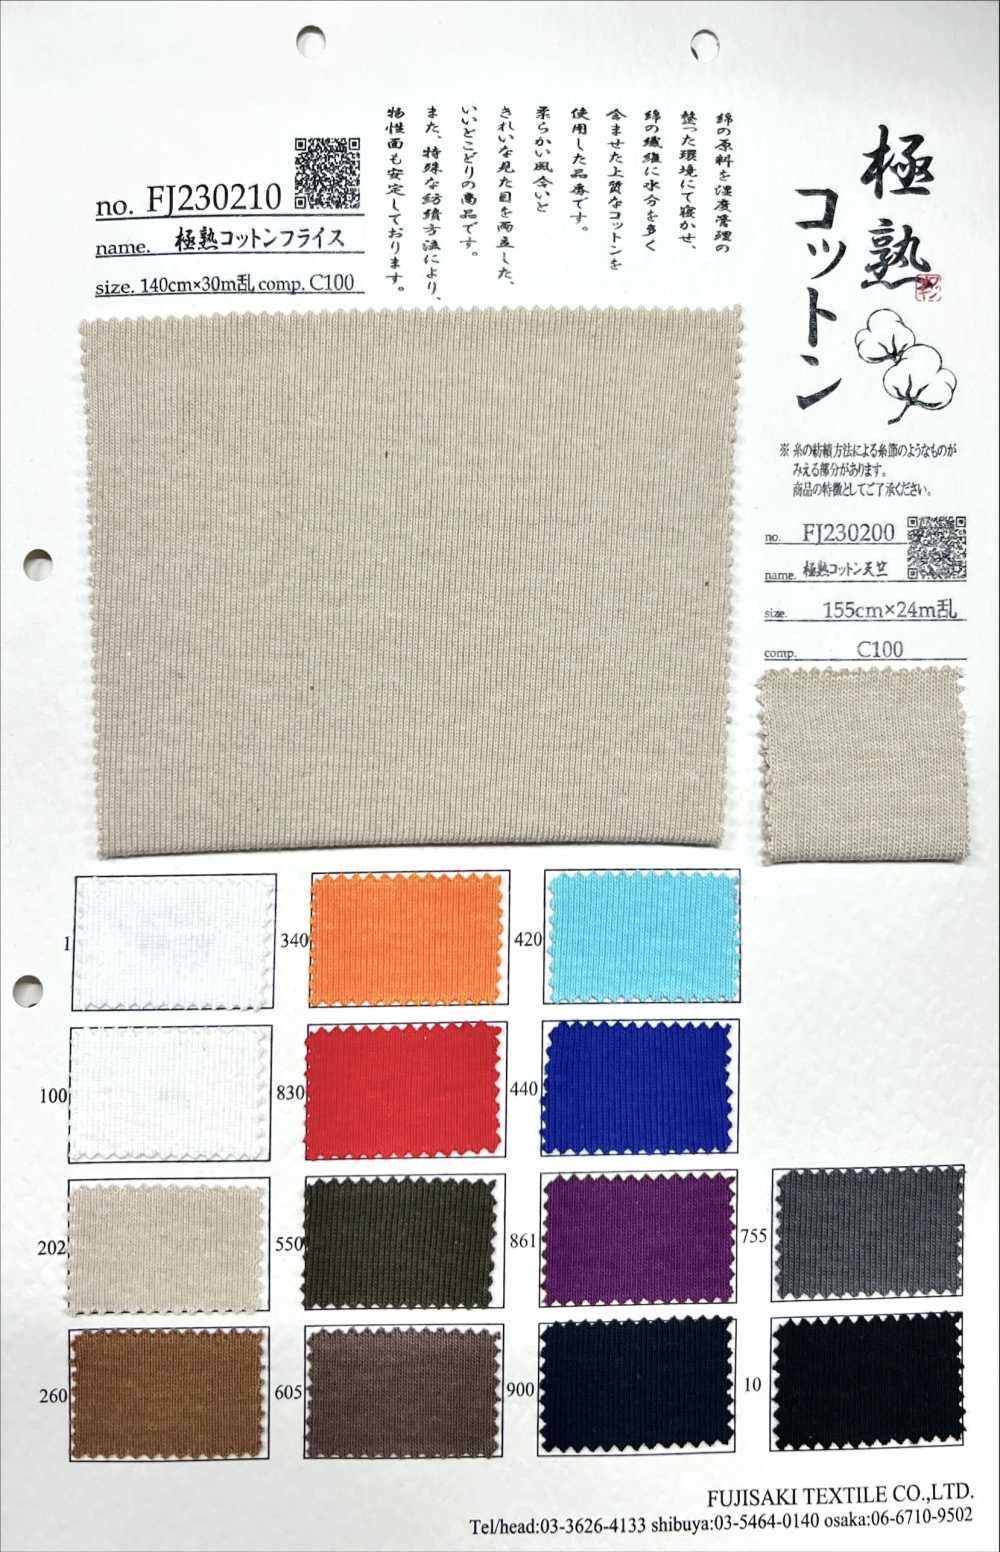 FJ230210 Costola Circolare In Cotone Estremamente Maturo[Tessile / Tessuto] Fujisaki Textile